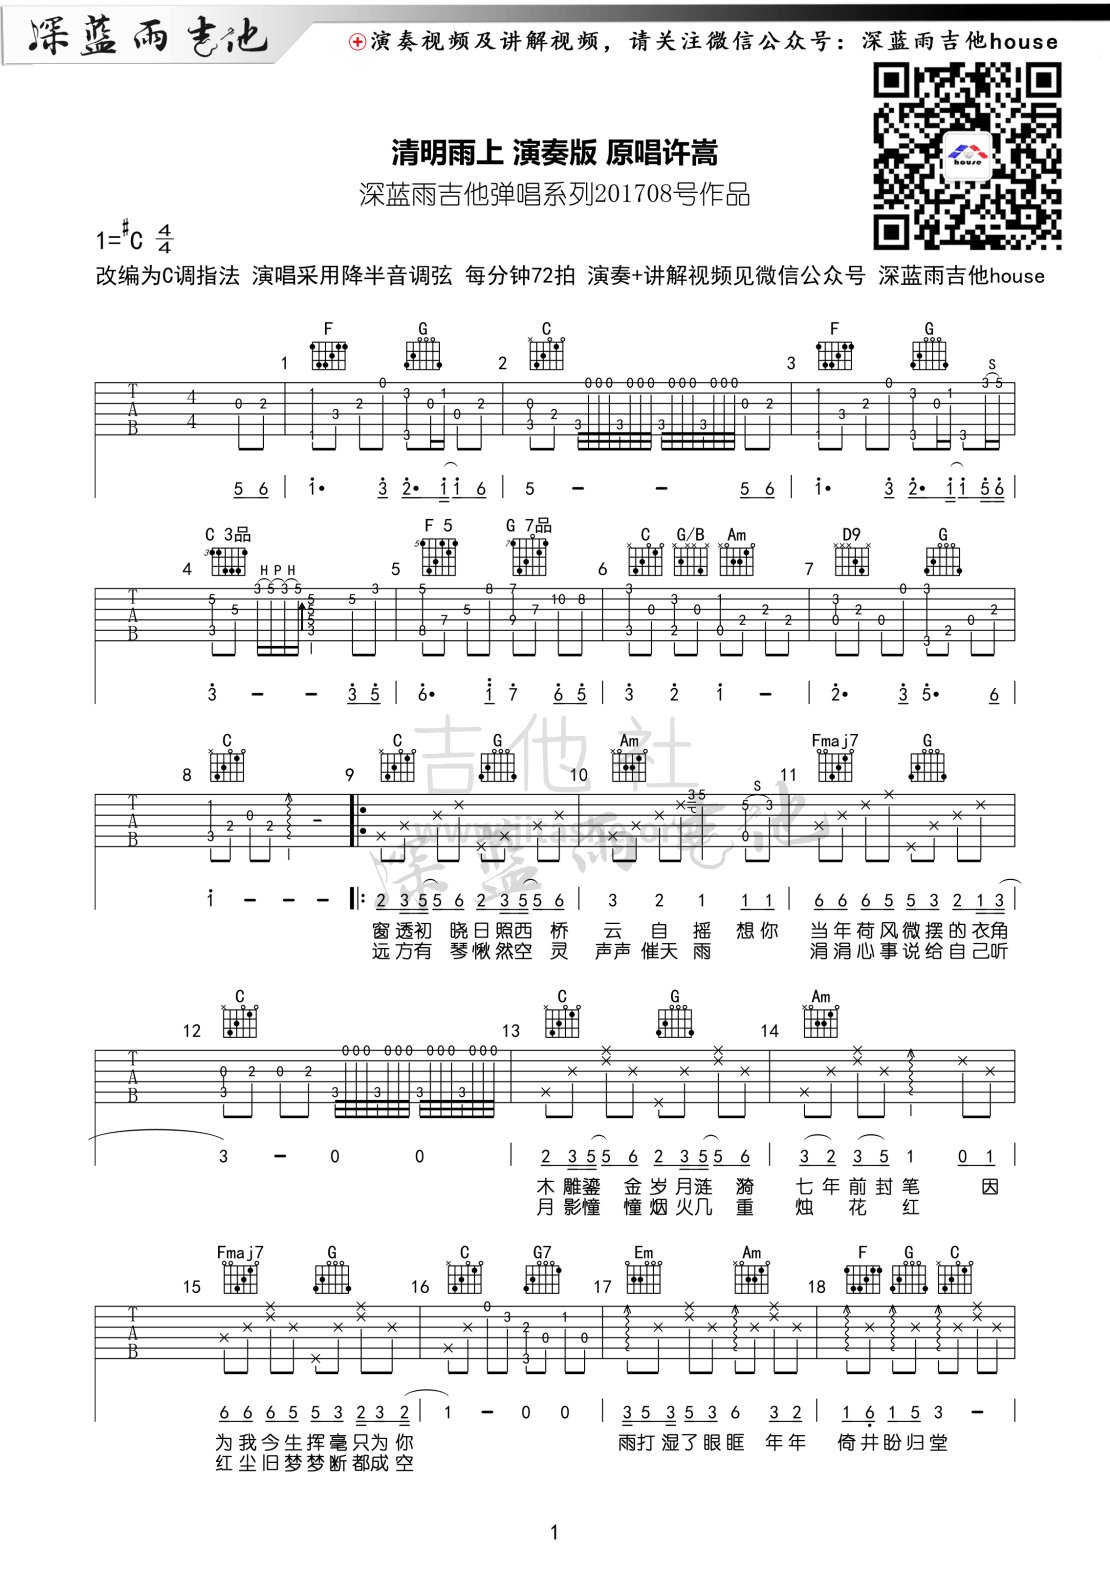 打印:清明雨上(深蓝雨吉他弹唱版附曲谱和教学讲解)吉他谱_许嵩(Vae)_清明雨上 吉他谱01.gif